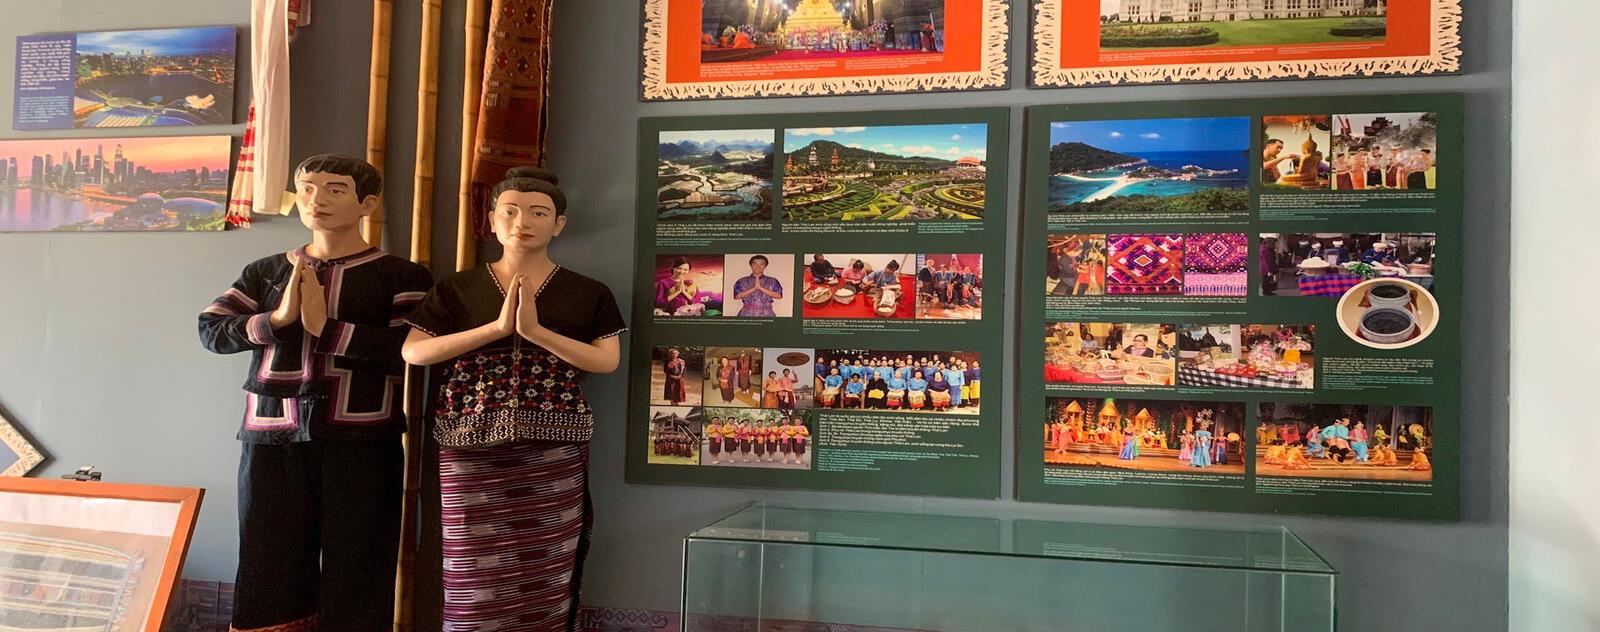 Bảo tàng Văn hóa các dân tộc Việt Nam